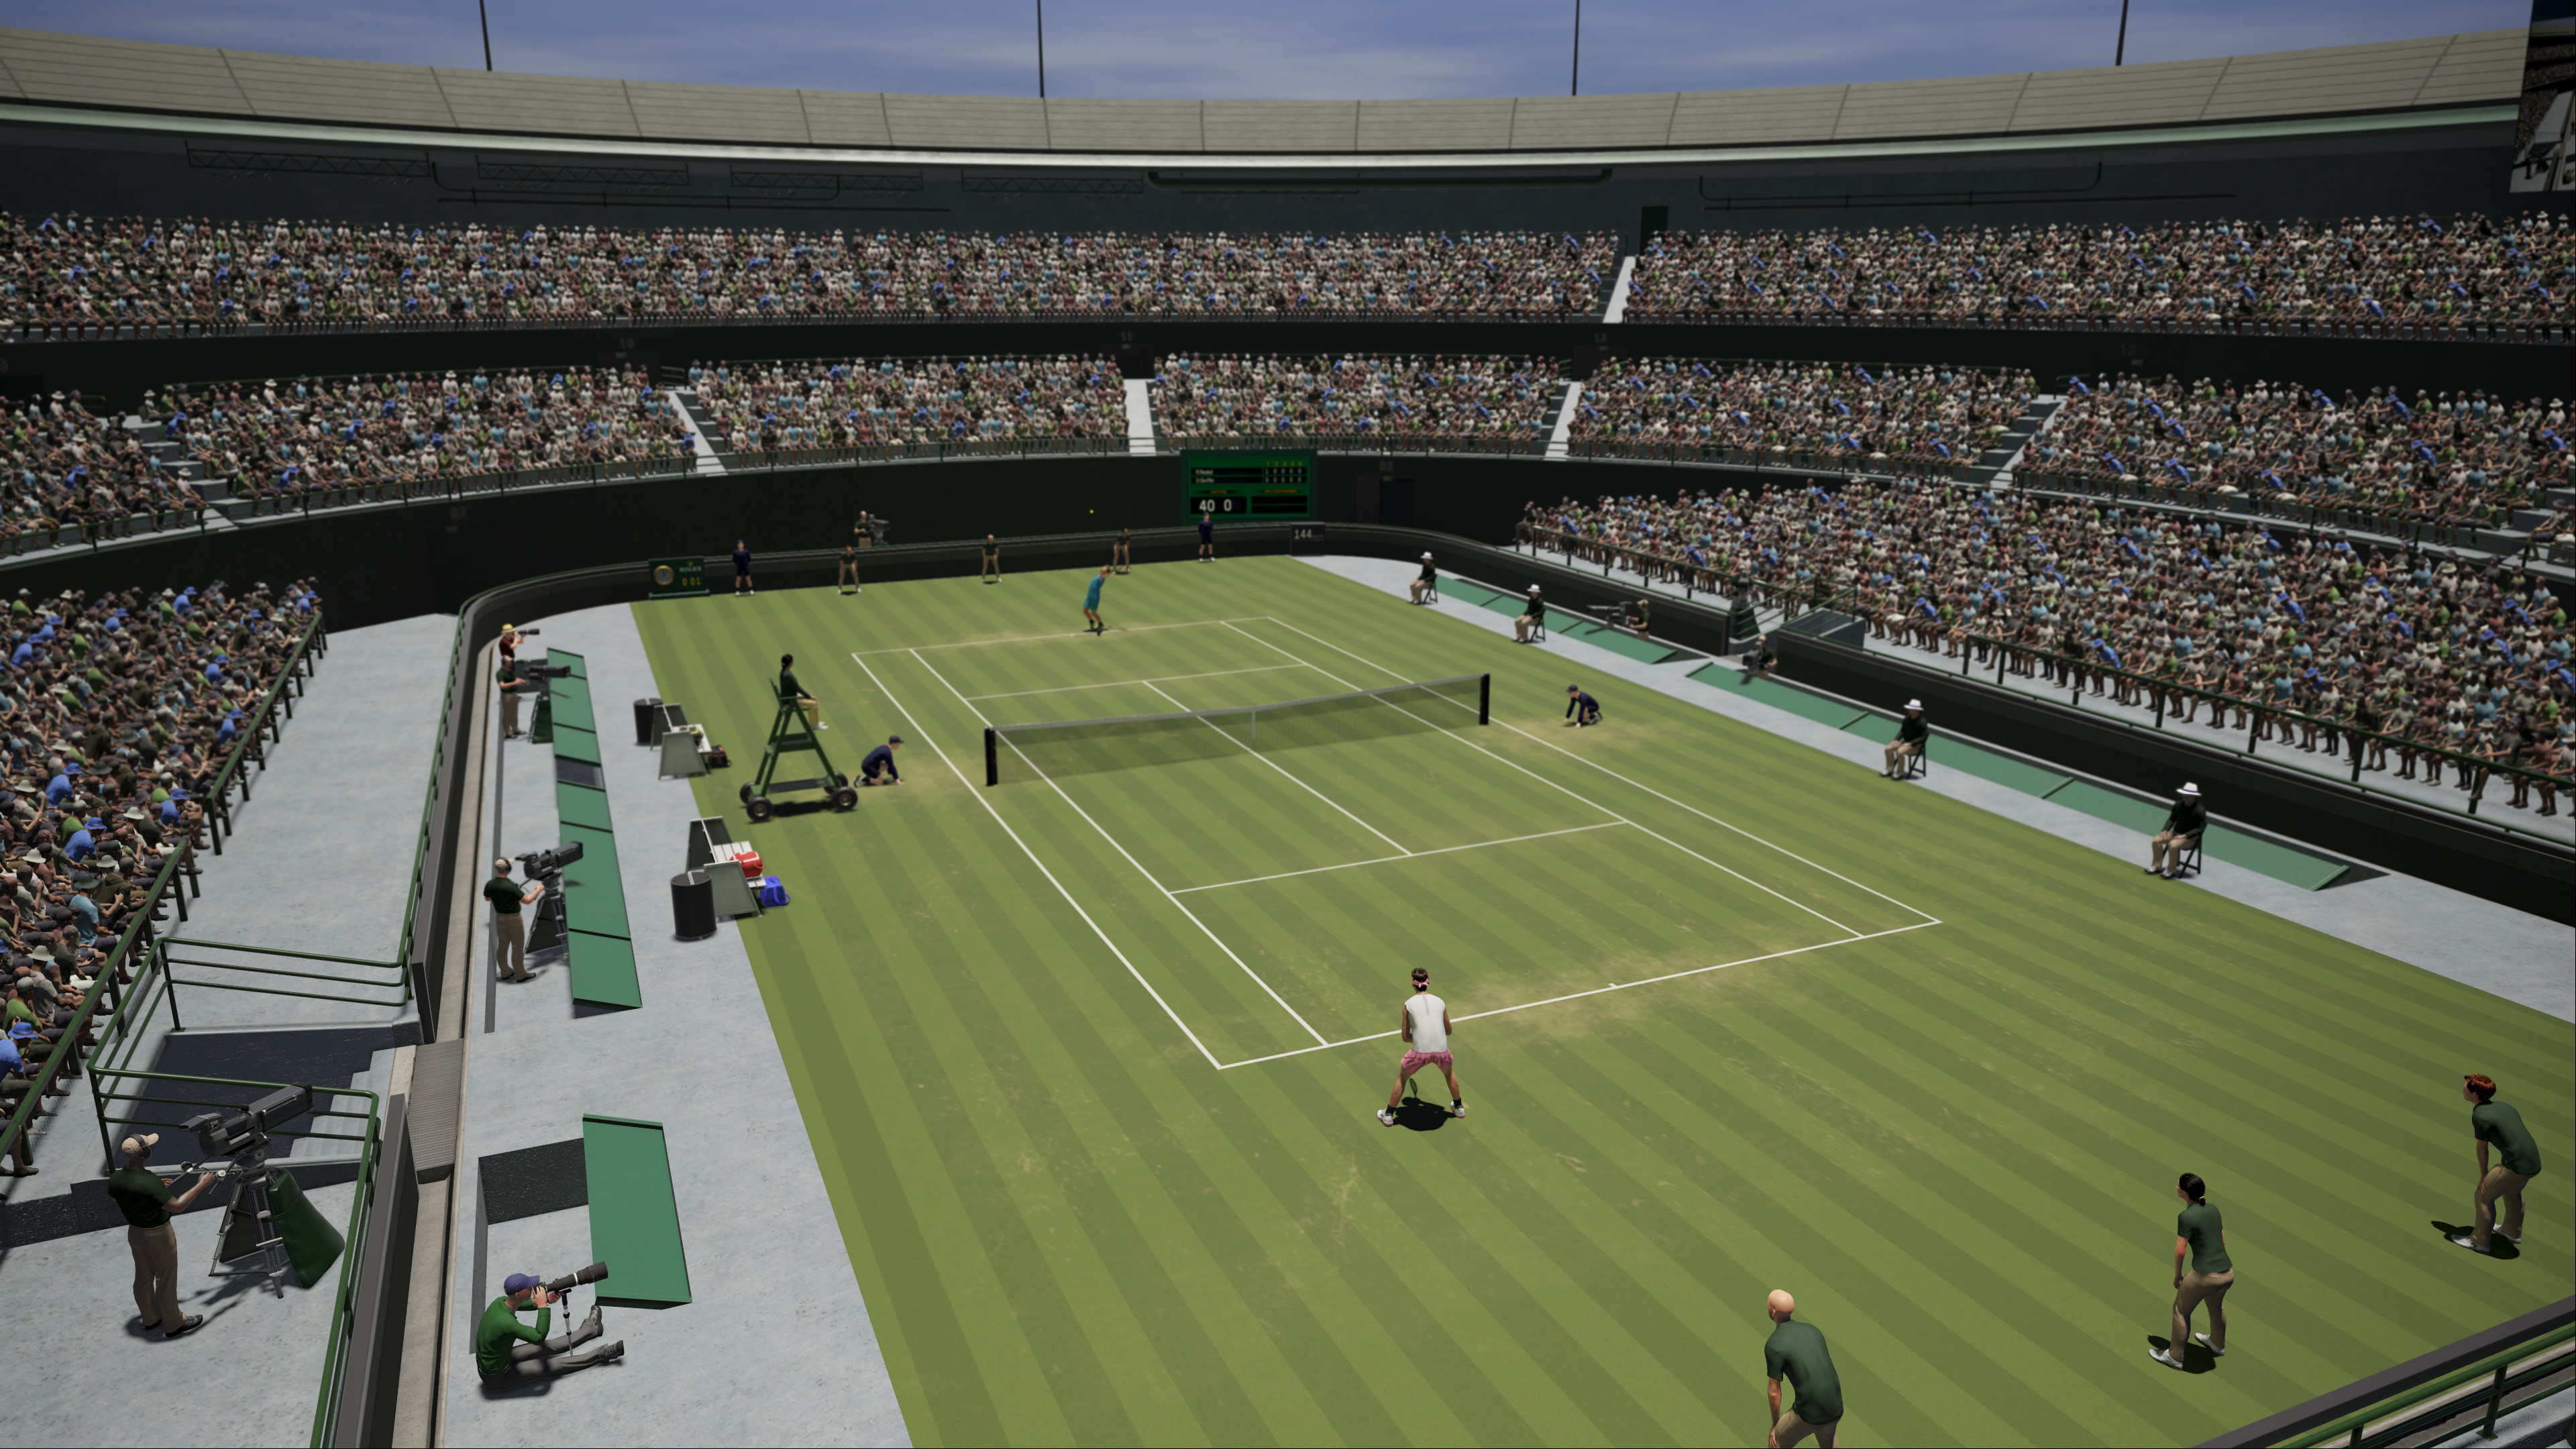 AO International Tennis screenshot